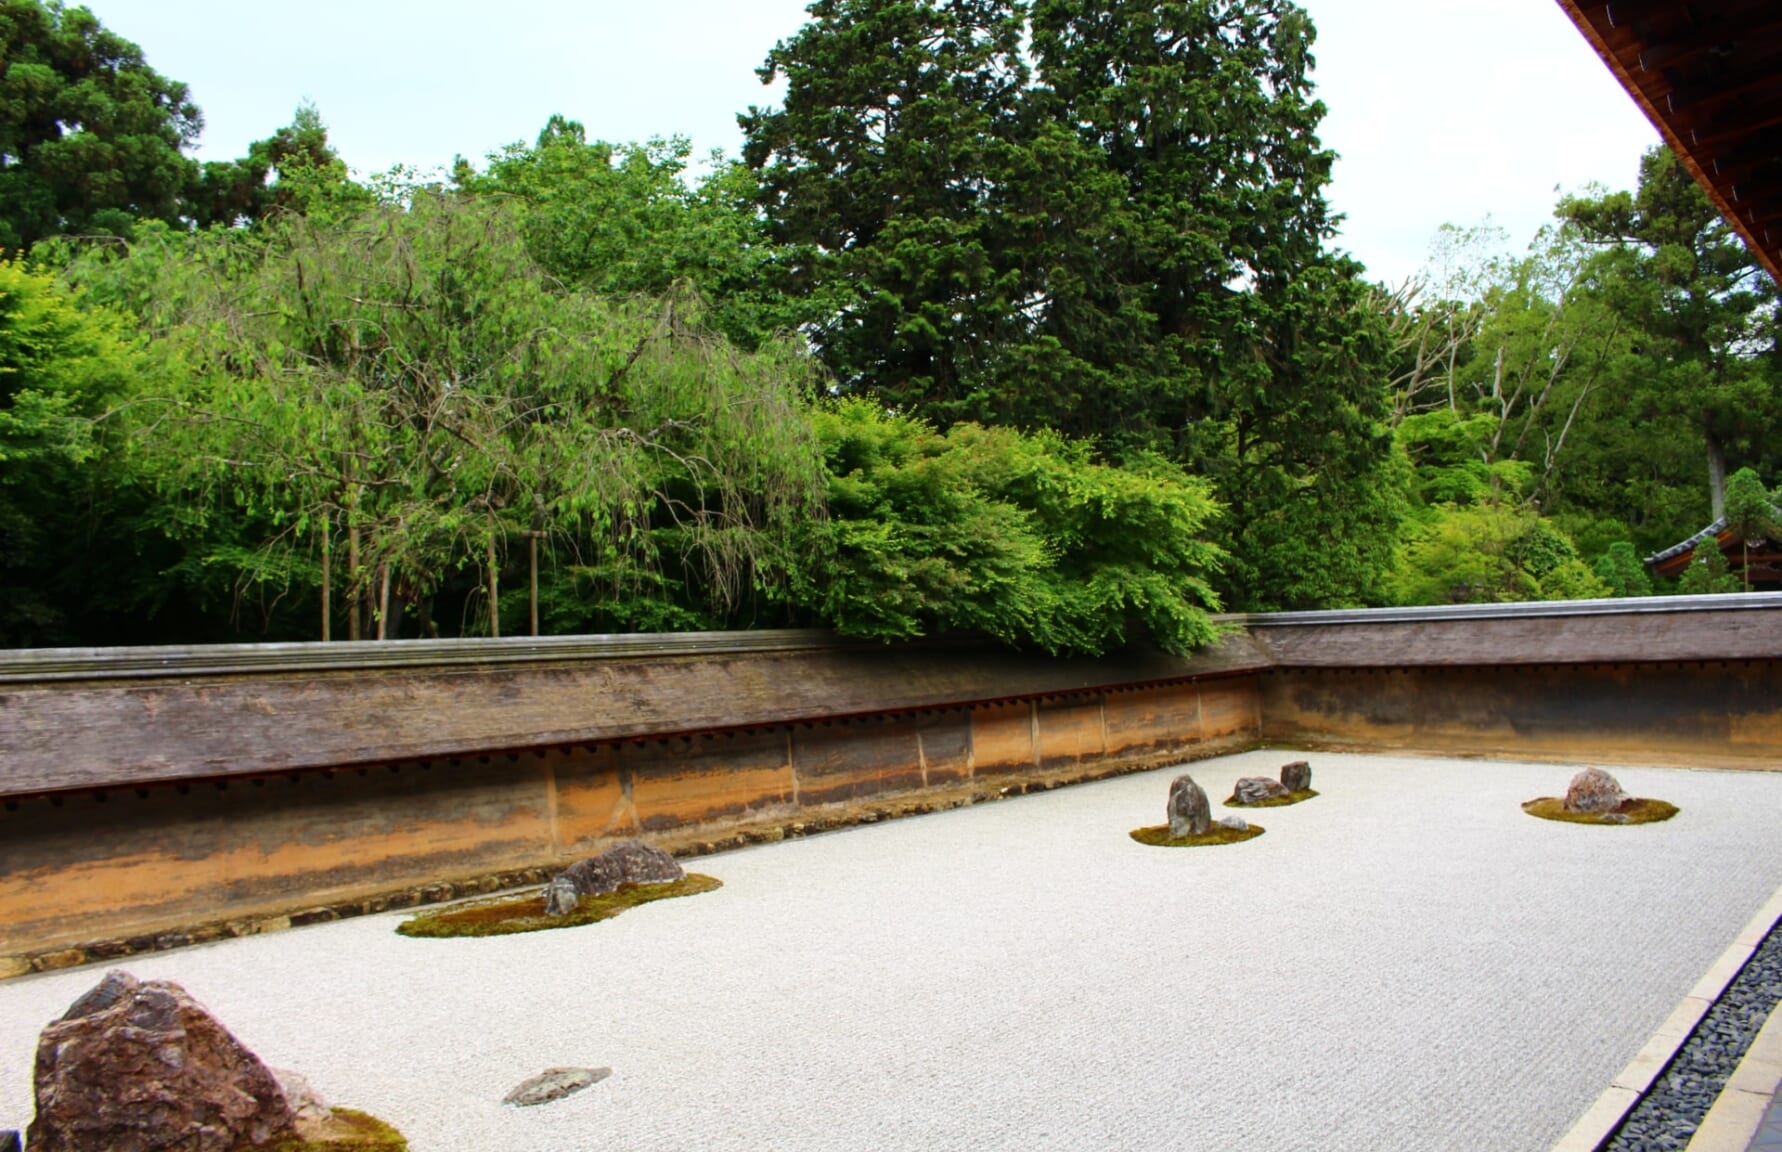 Ryoanji Temple Rock Garden in Kyoto